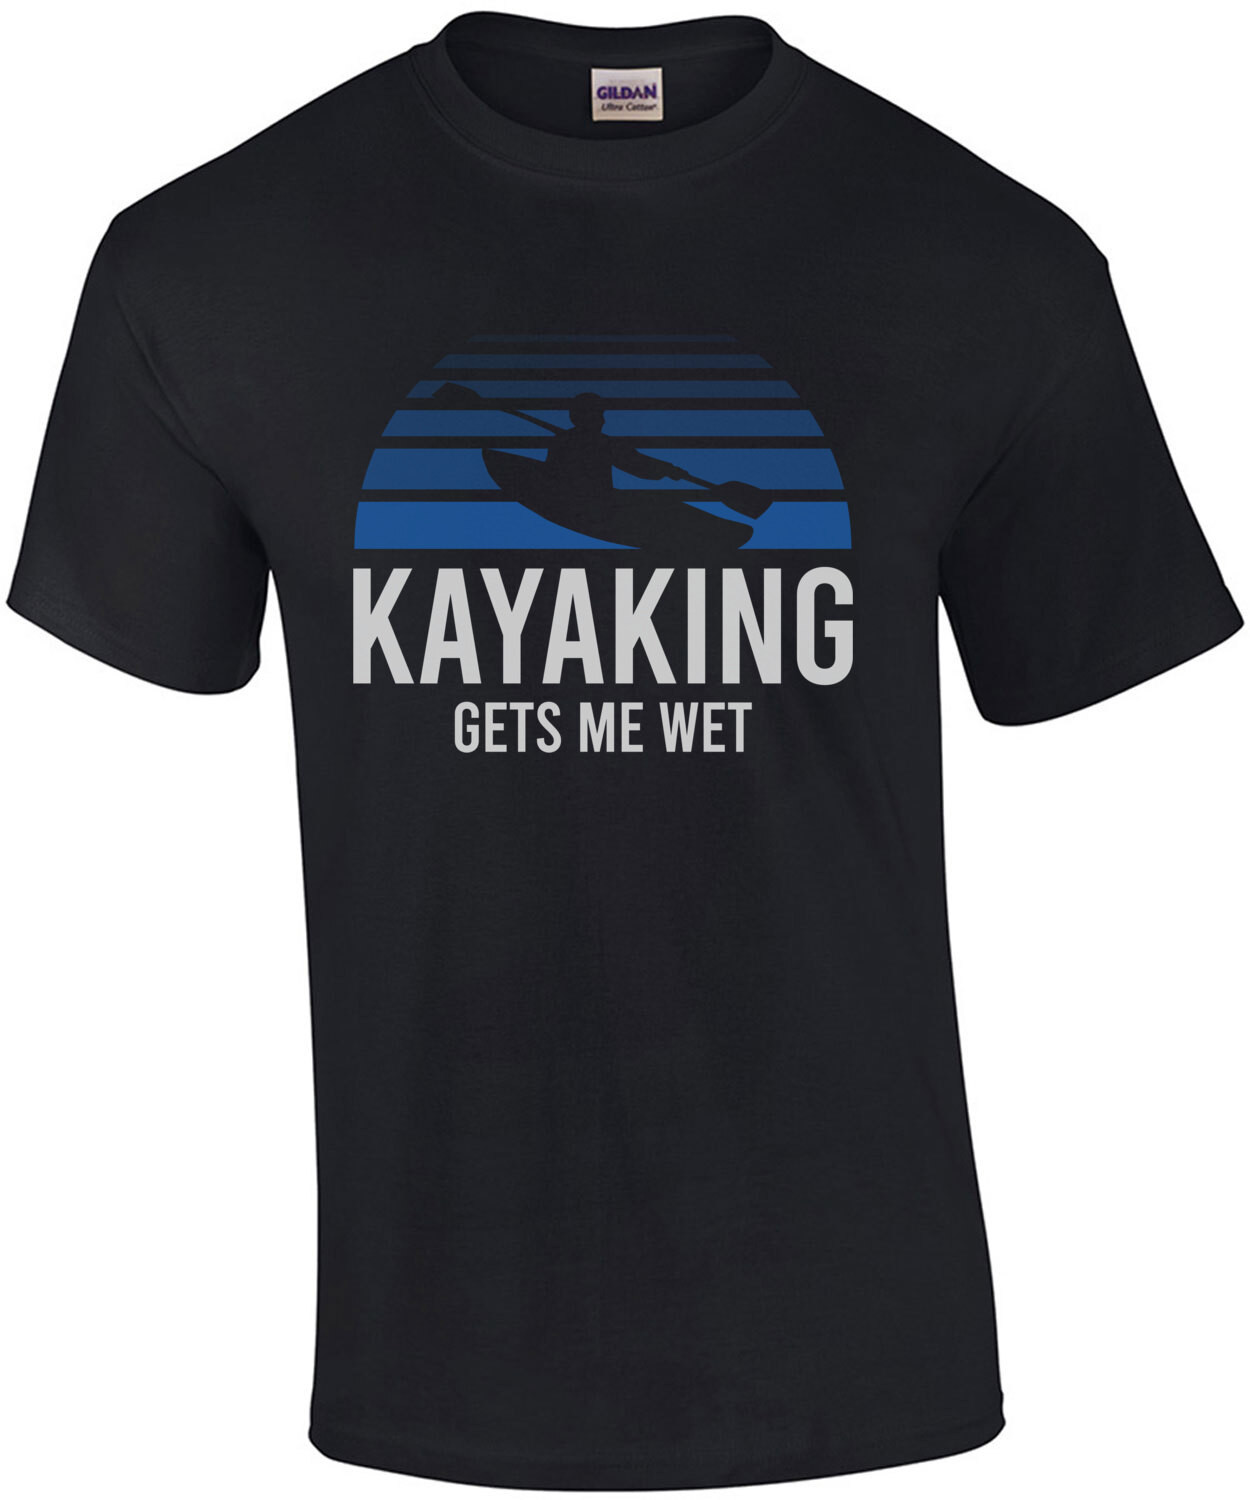 Kayaking Gets Me Wet - Pun T-Shirt